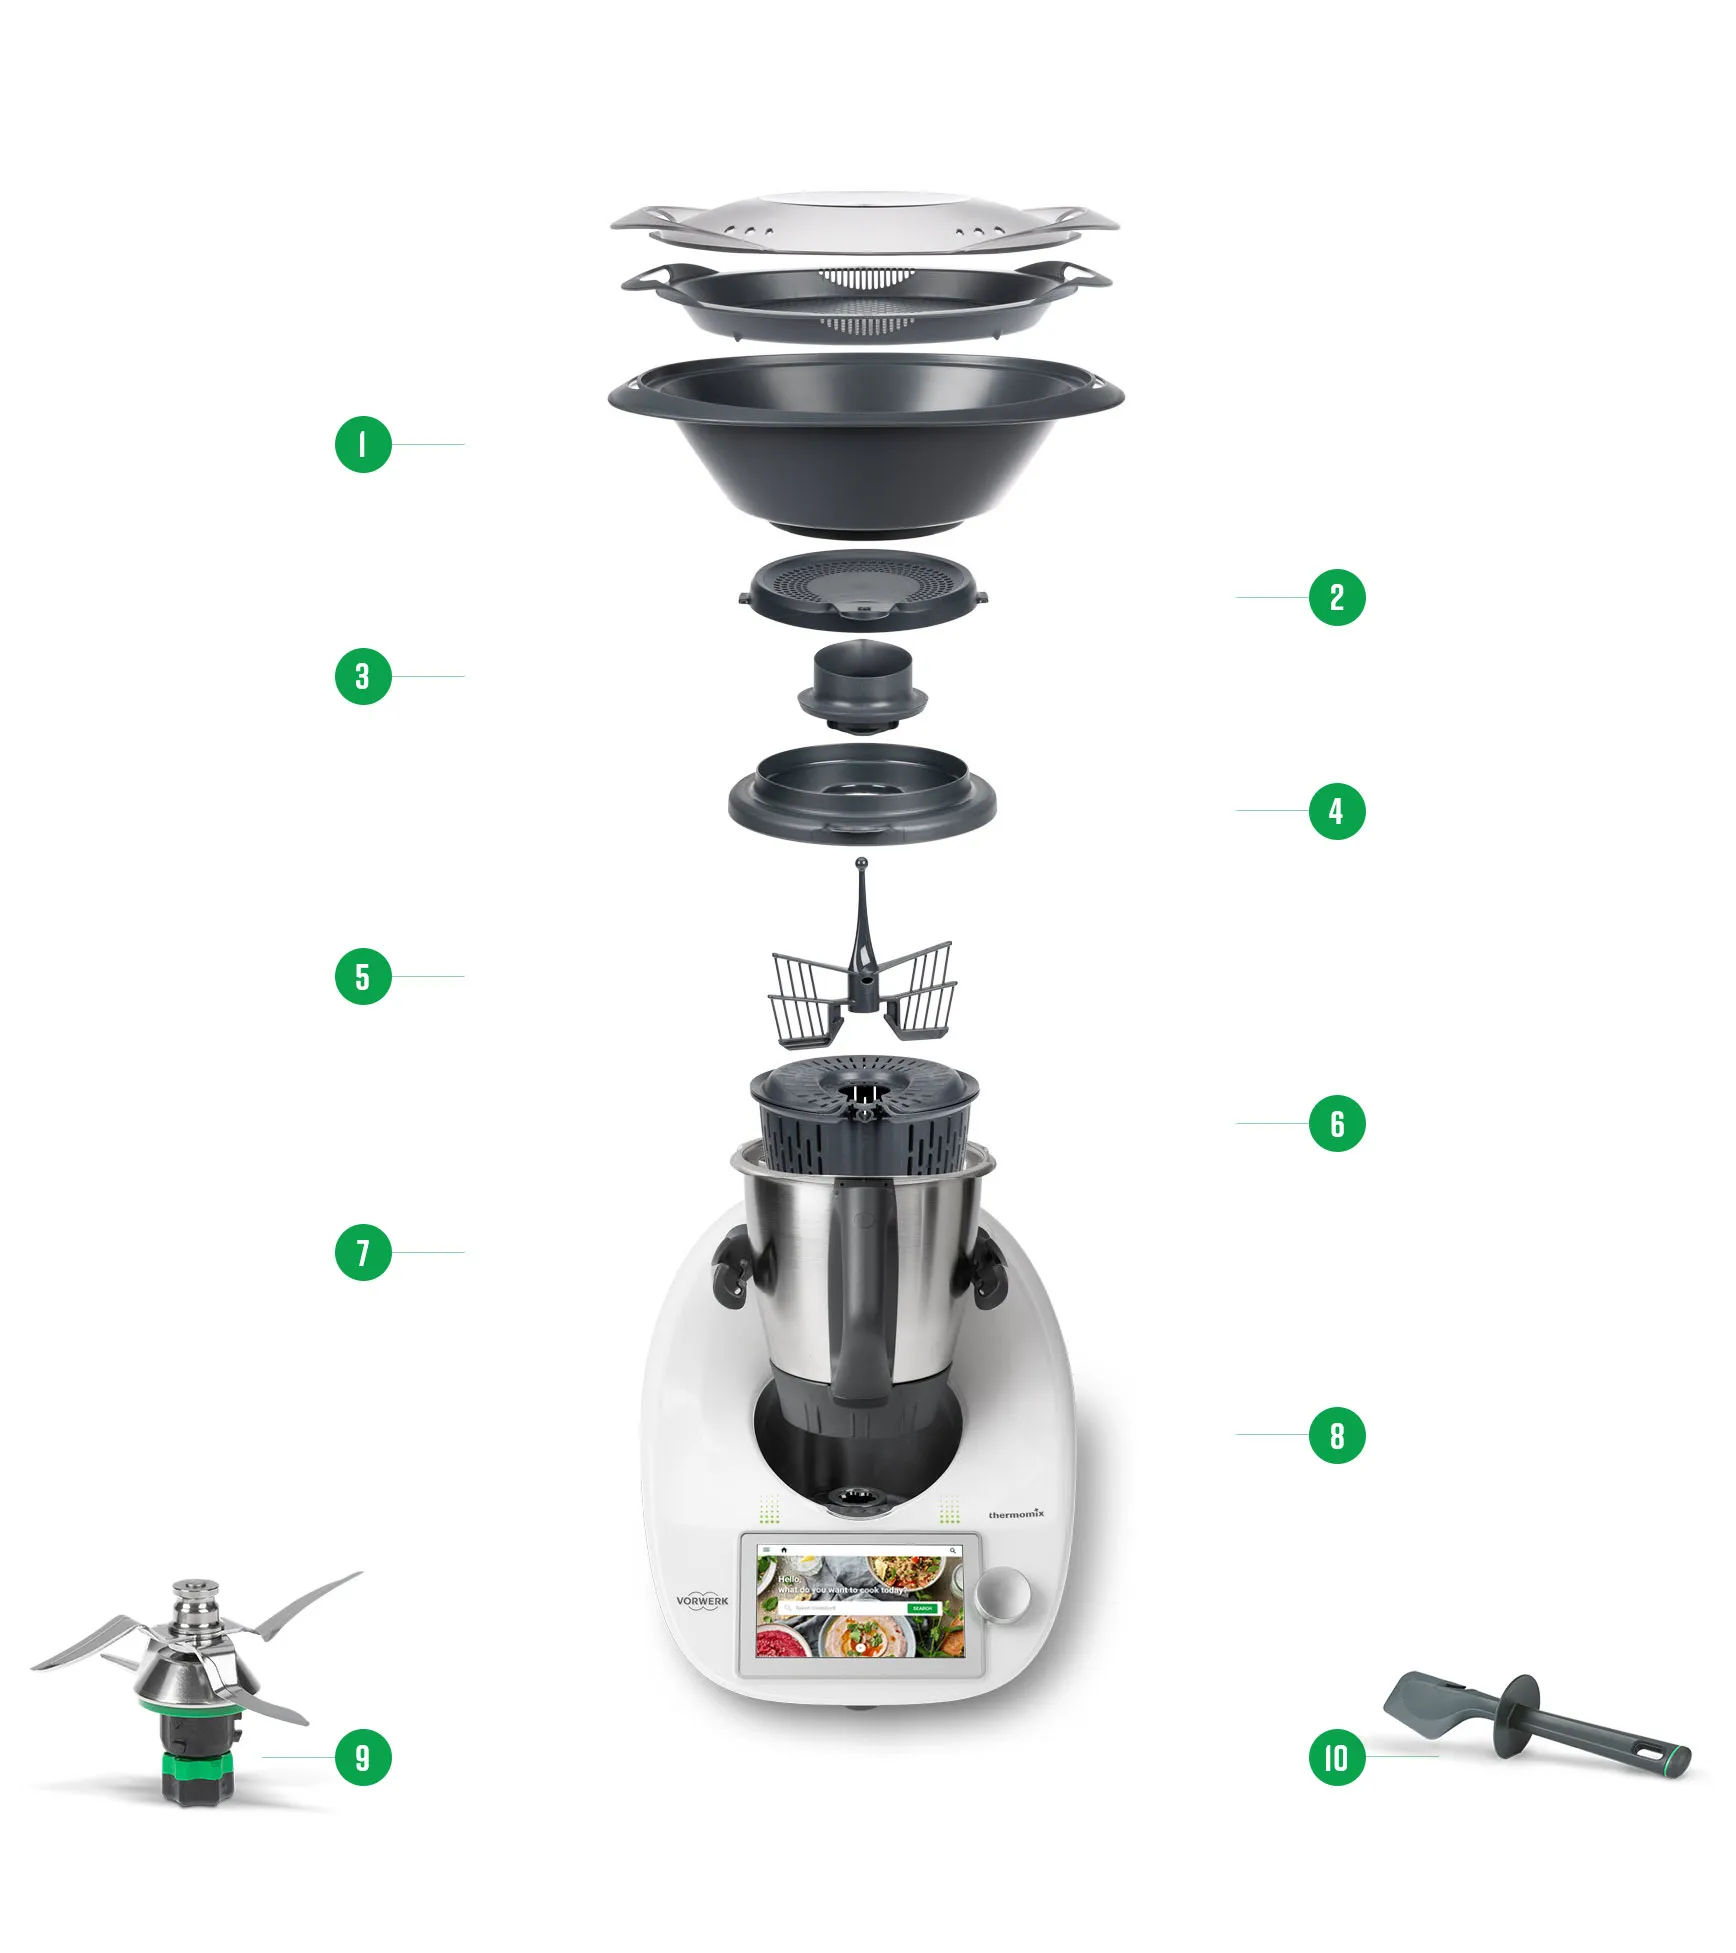 Une belle image montrant les différents accessoires inclus dans le robot de cuisine thermomix TM6.